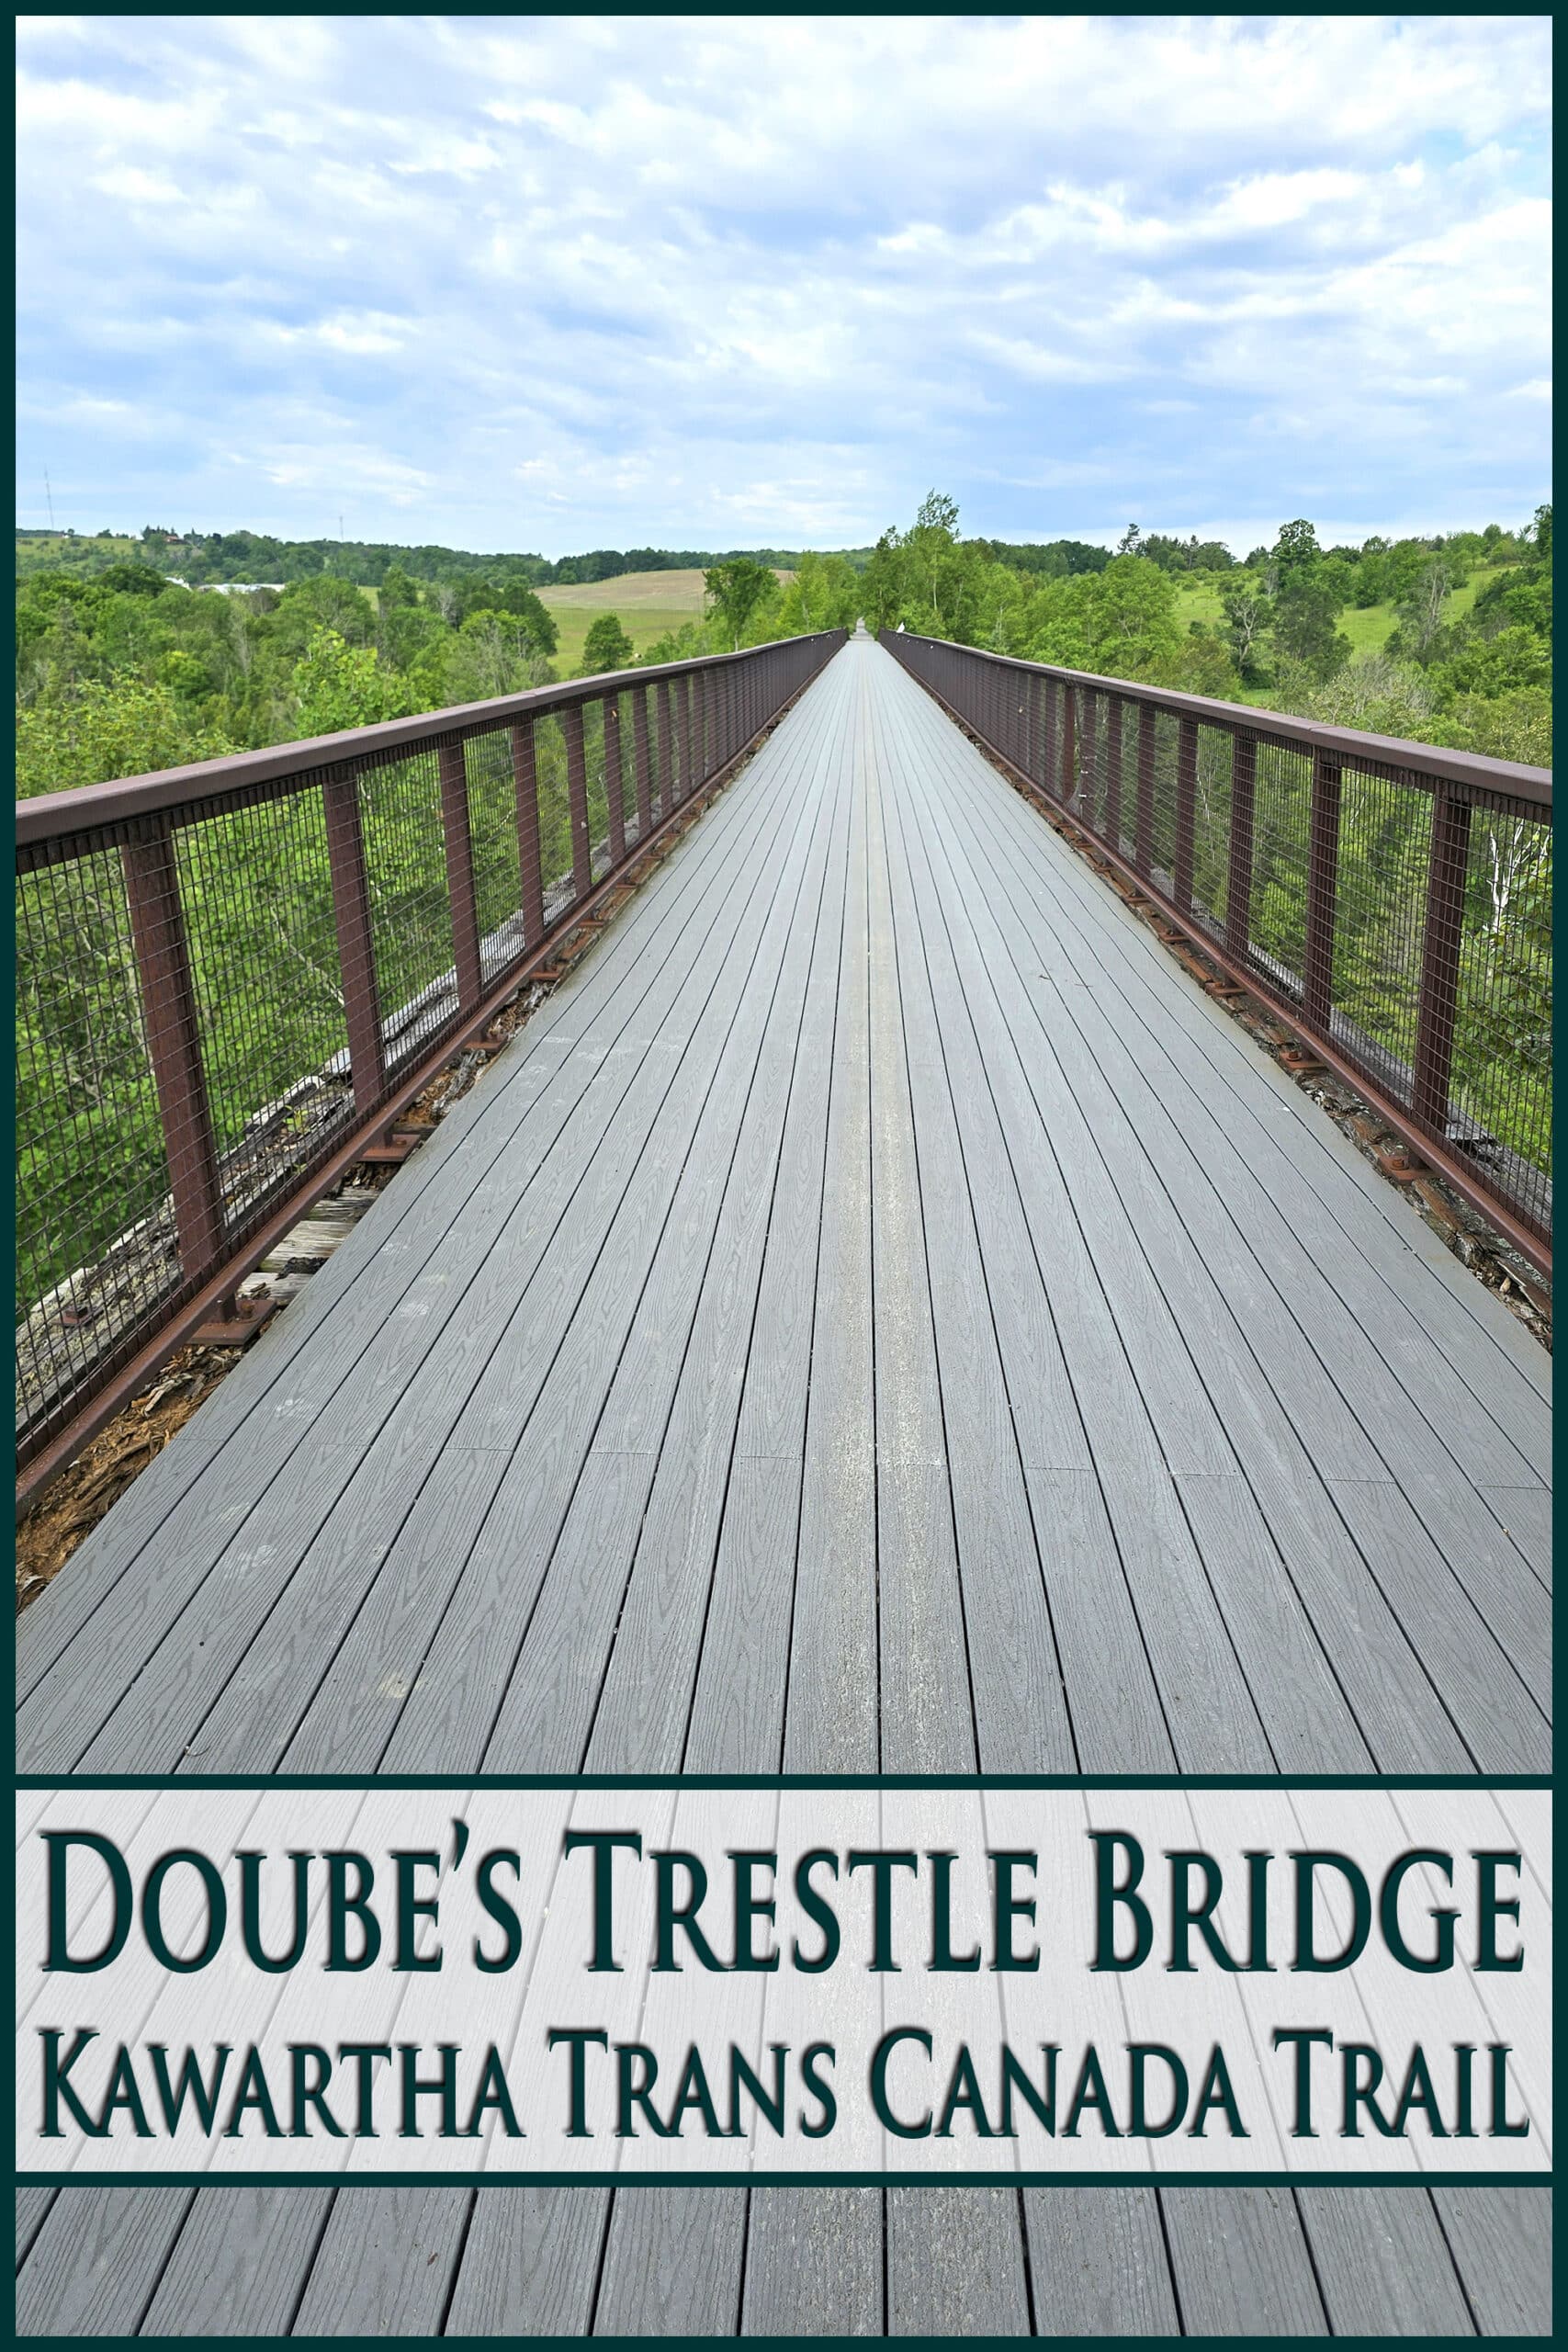 A long trestle bridge, extending into the distance. Overlaid text says doube’s trestle bridge.